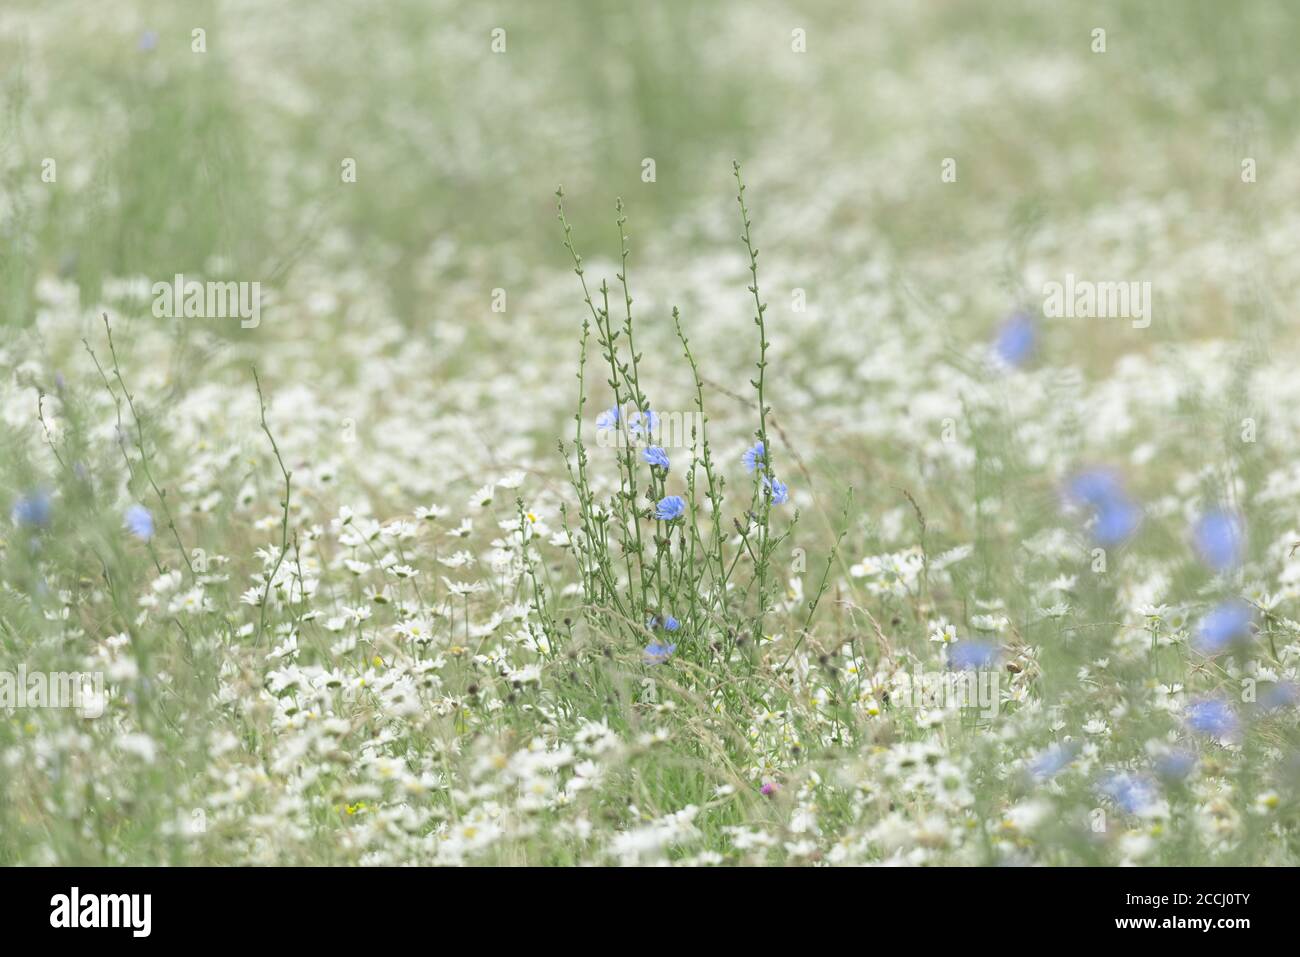 2 - énorme quantité de beaucoup de tapis blanc sauvage de pâquerettes le plancher de prairie, et un patch de la chicorée mince des plantes à fleurs bleues s'élèvent au-dessus d'eux. Banque D'Images